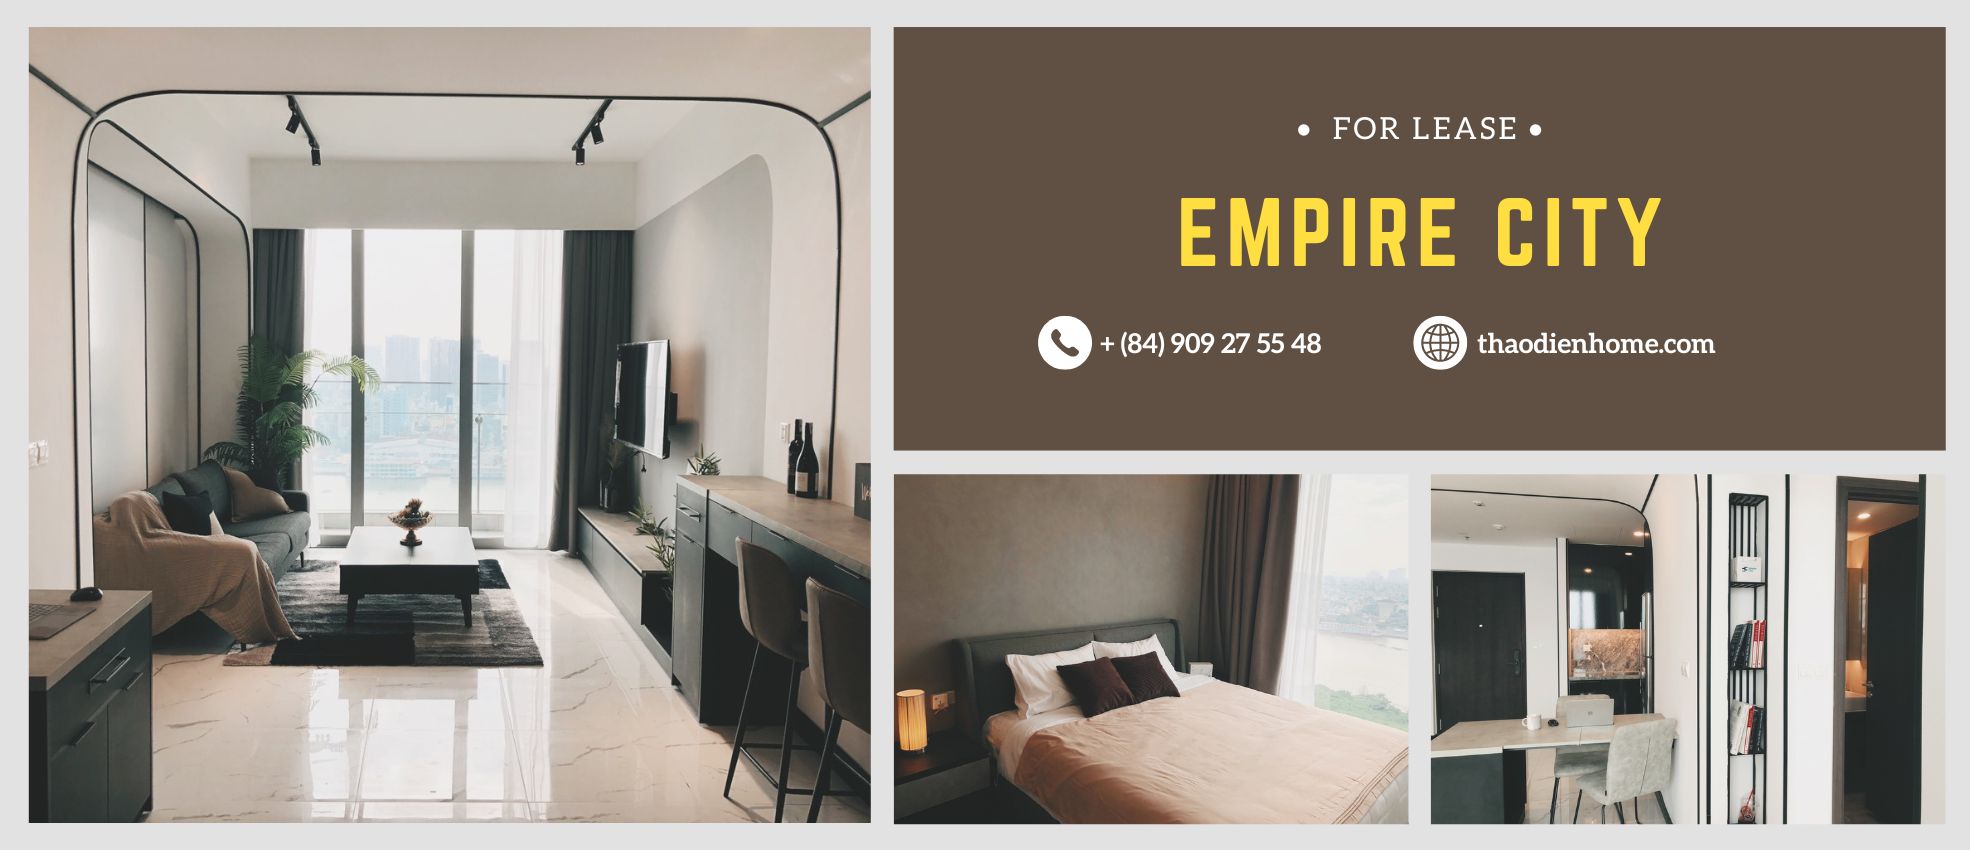 Căn hộ 1 phòng ngủ trang nhã và yên tĩnh tại Tilia Residence – Empire City với tầm nhìn ra thành phố và sông Sài Gòn